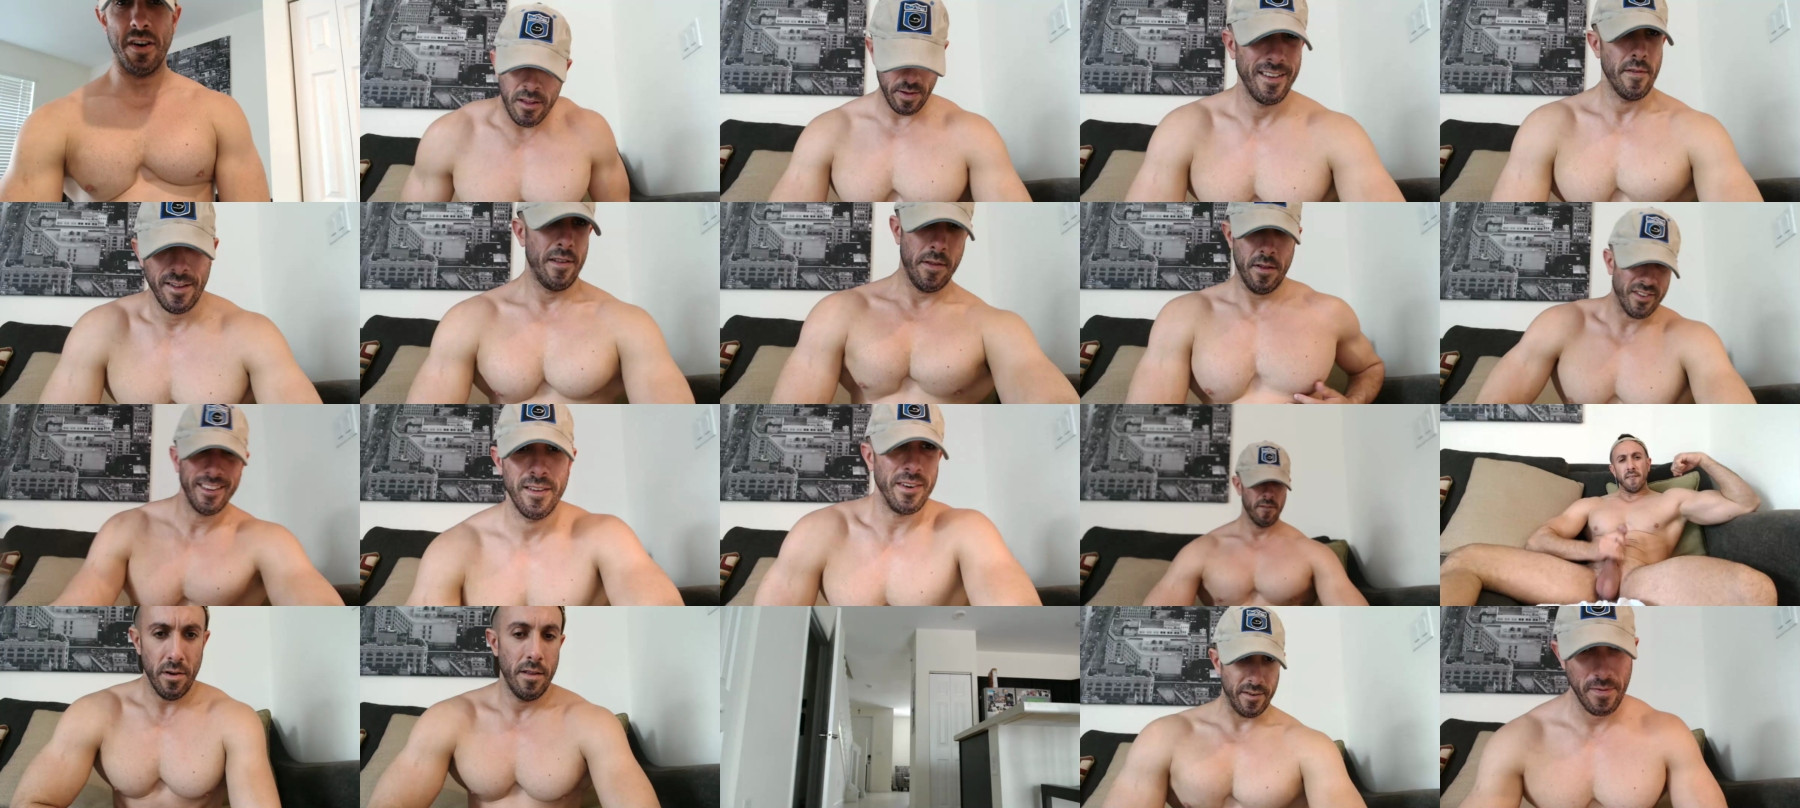 Nerdmuscles2x  29-05-2021 Male Webcam